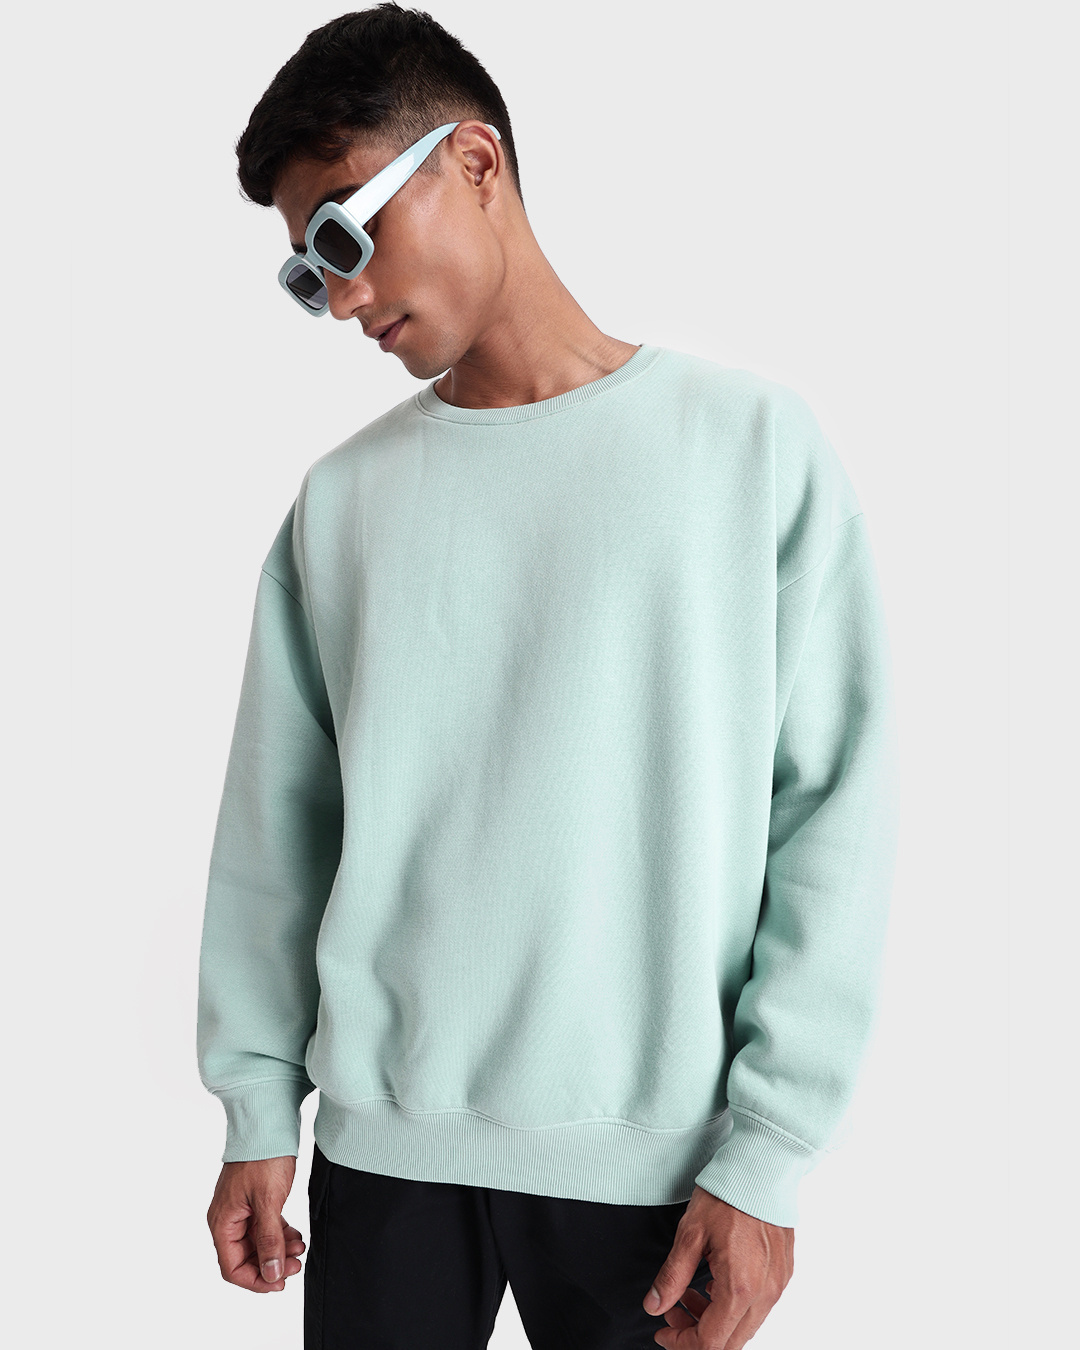 Buy Men's Green Oversized Plus Size Sweatshirt Online at Bewakoof